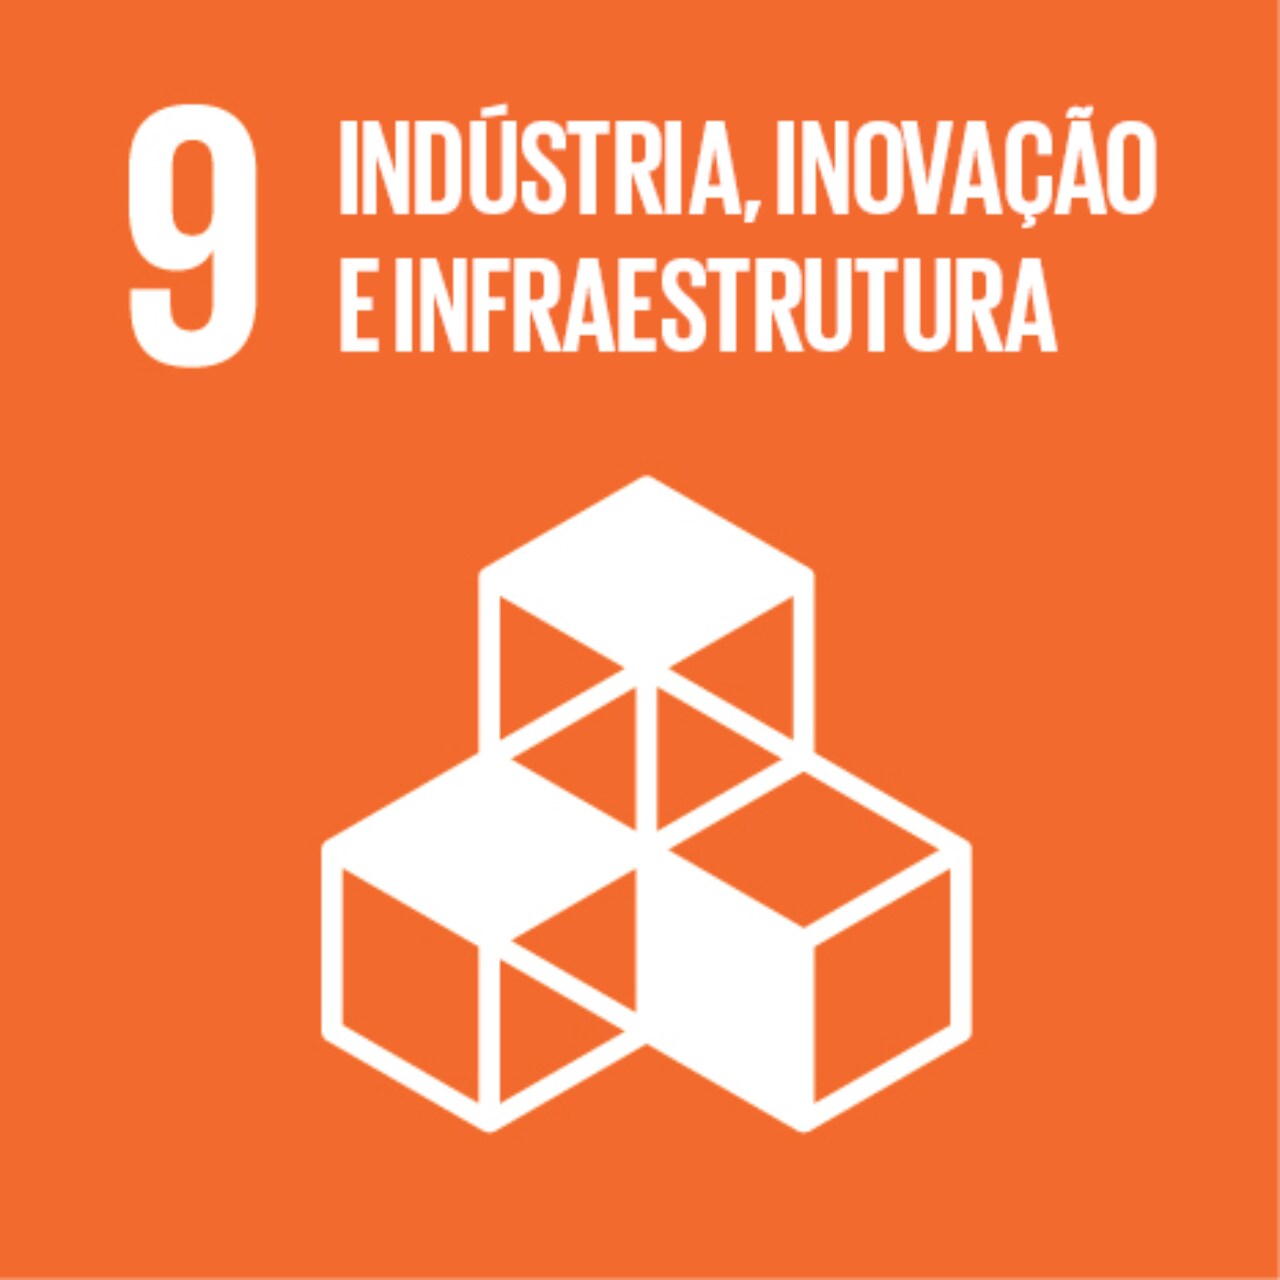 Imagem que representa o ODS número Nove – Indústria, inovação e infraestrutura, com fundo alaranjado e o ícone de cubos empilhados.